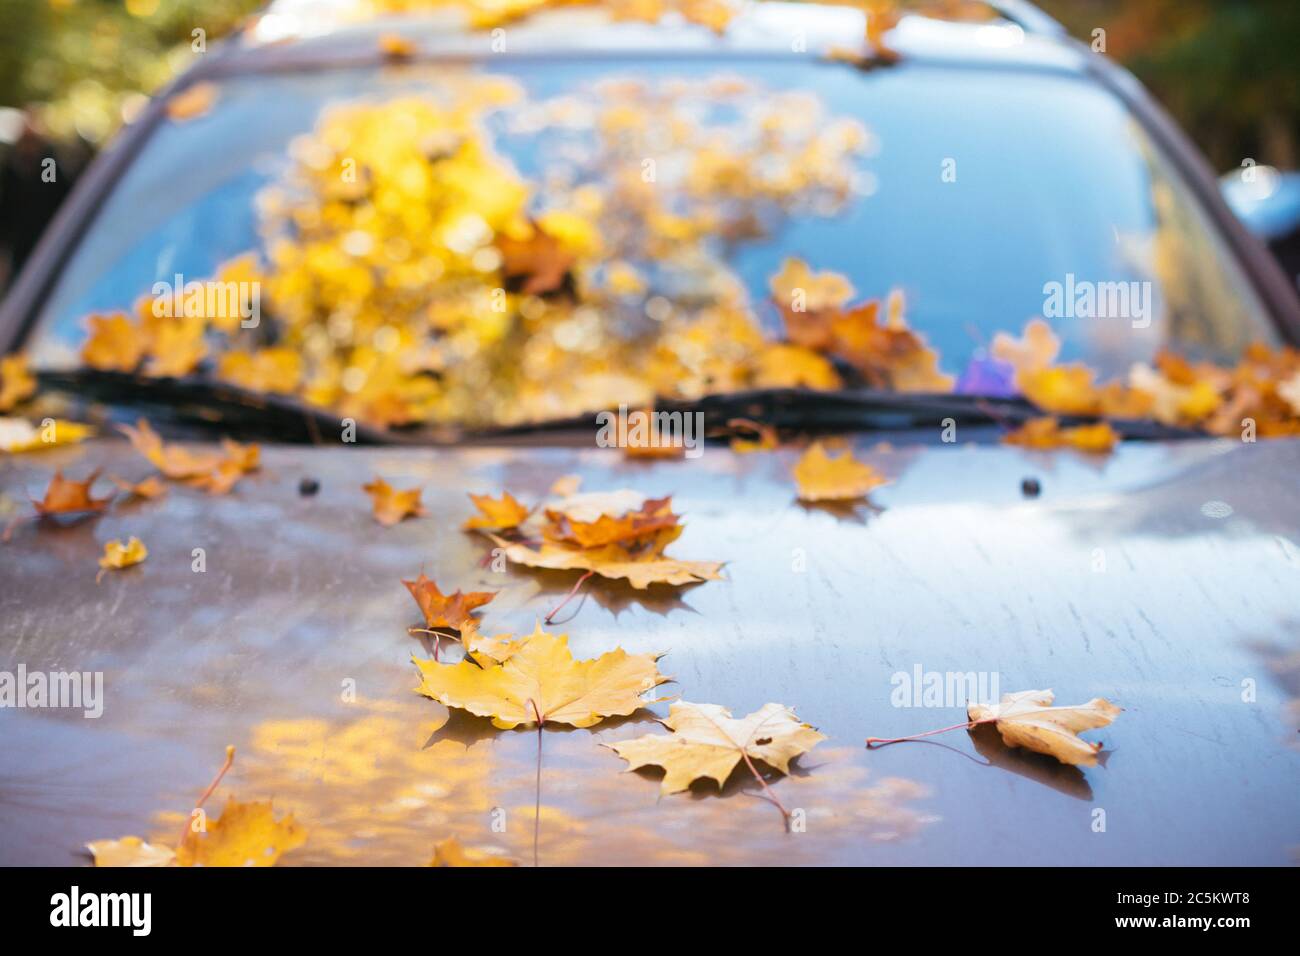 Hojas de arce amarillo caídos sobre el parabrisas del coche y la capucha en tiempo soleado, vista frontal, enfoque suave. Otoño follaje, transporte, concepto de temporada. Foto de stock